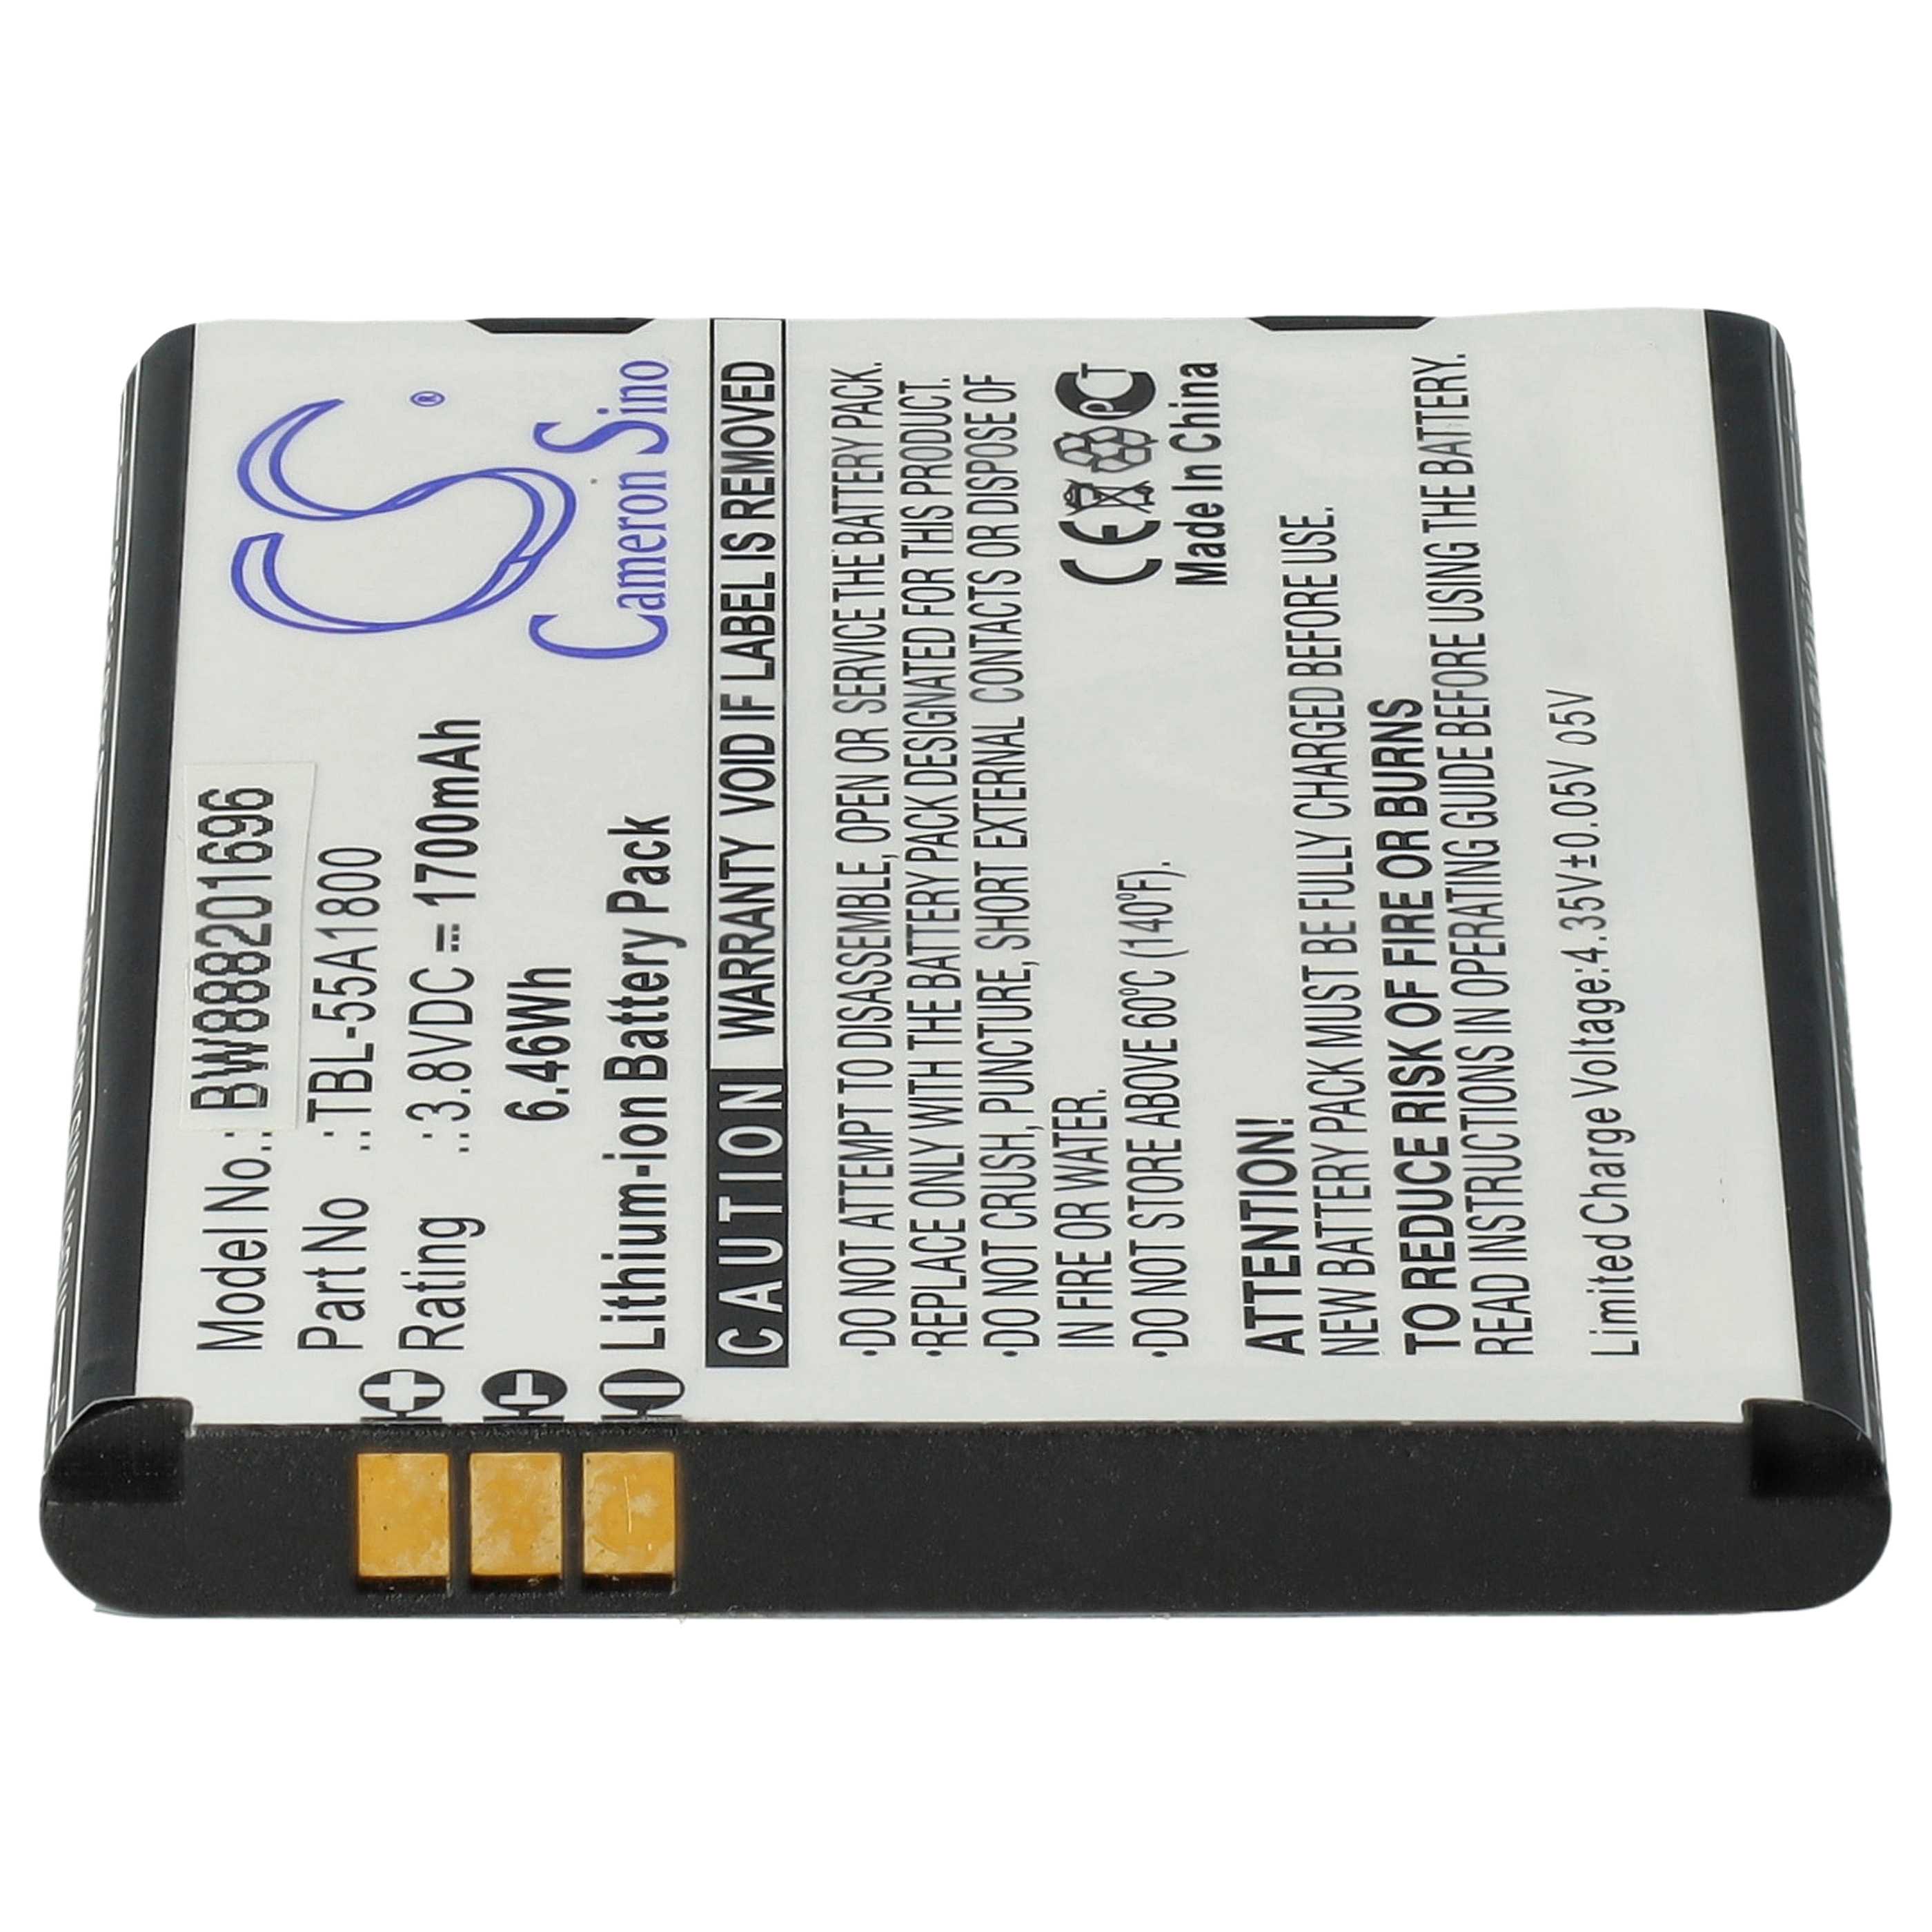 Batterie remplace TP-Link TBL-55A1800 pour routeur modem - 1700mAh 3,8V Li-ion